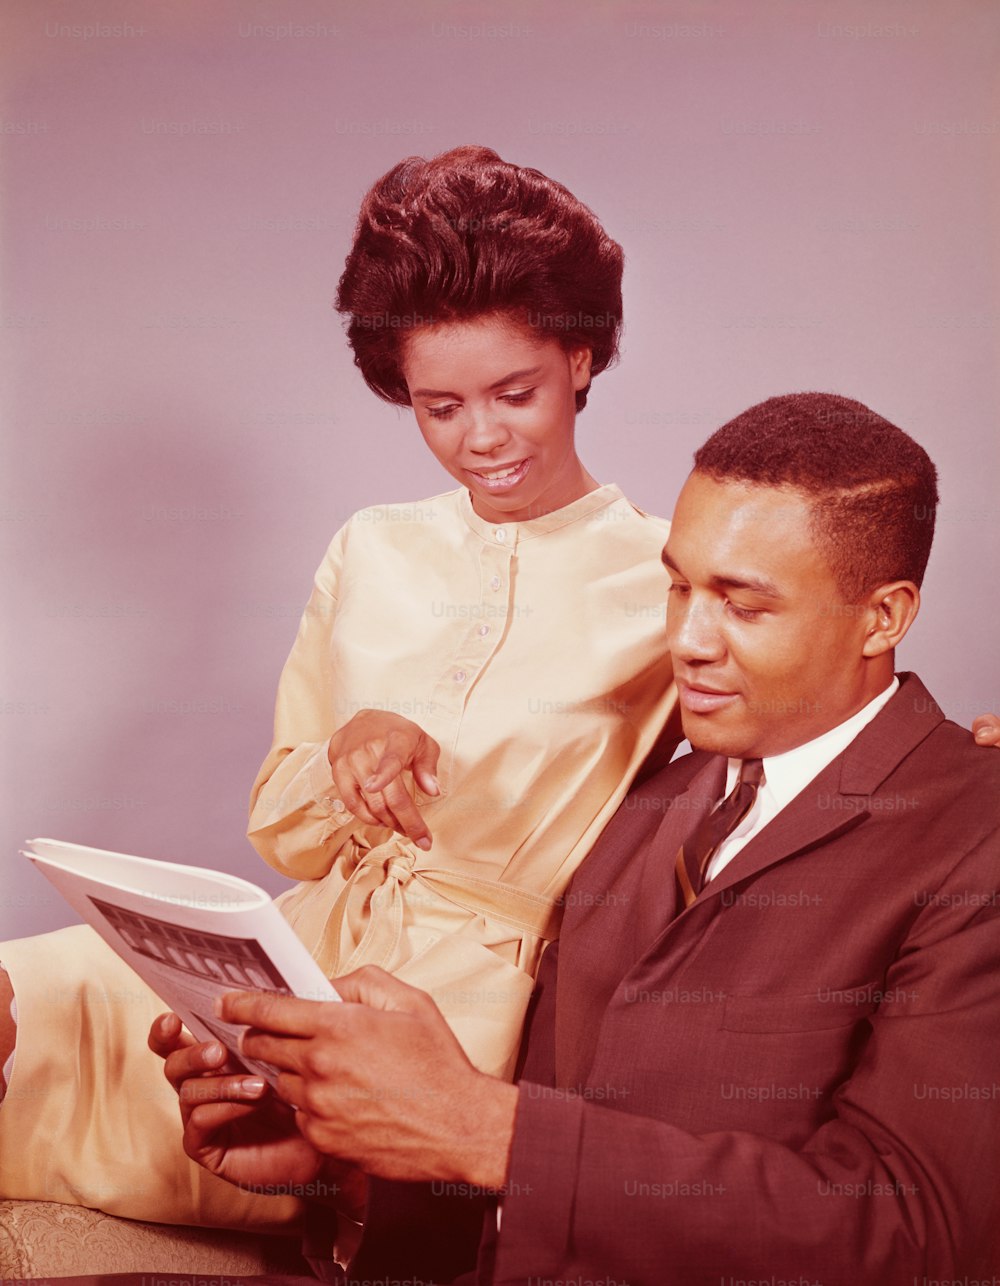 ESTADOS UNIDOS - POR VOLTA DE 1960: Casal sentado na cadeira, mulher apontando para artigo de revista.